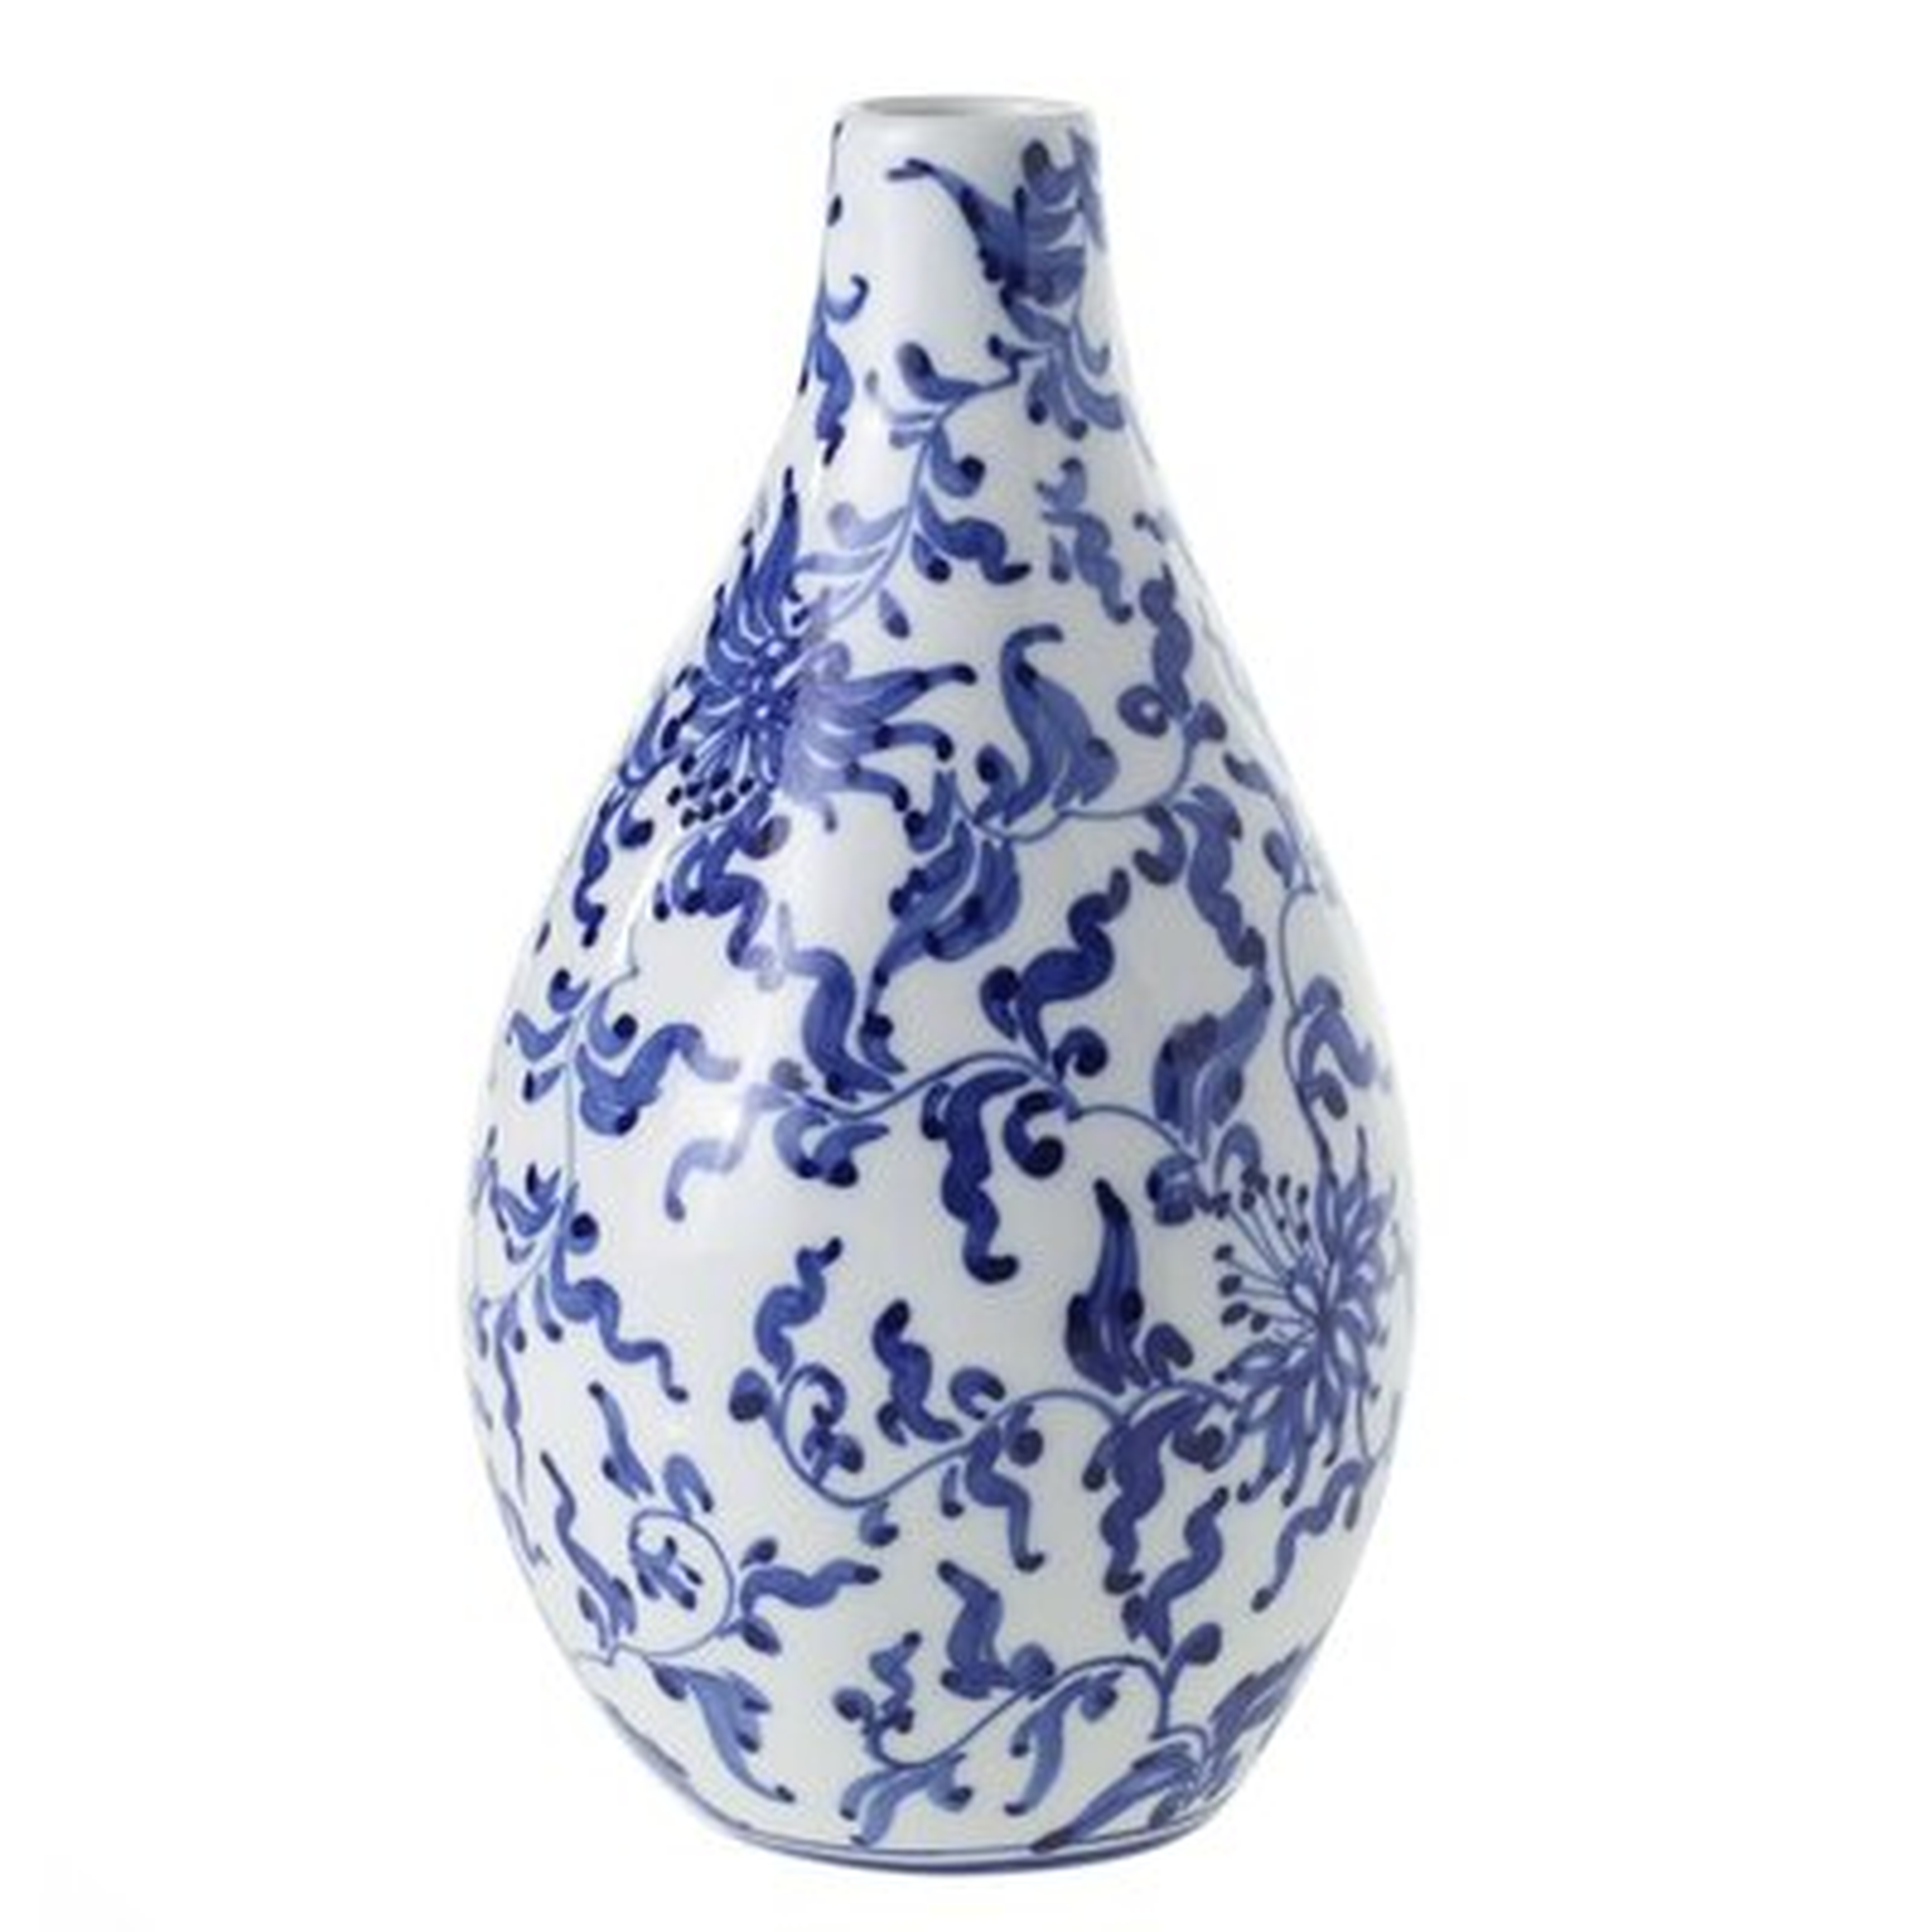 Harlyn Blue & White 7" Ceramic Table Vase - Wayfair